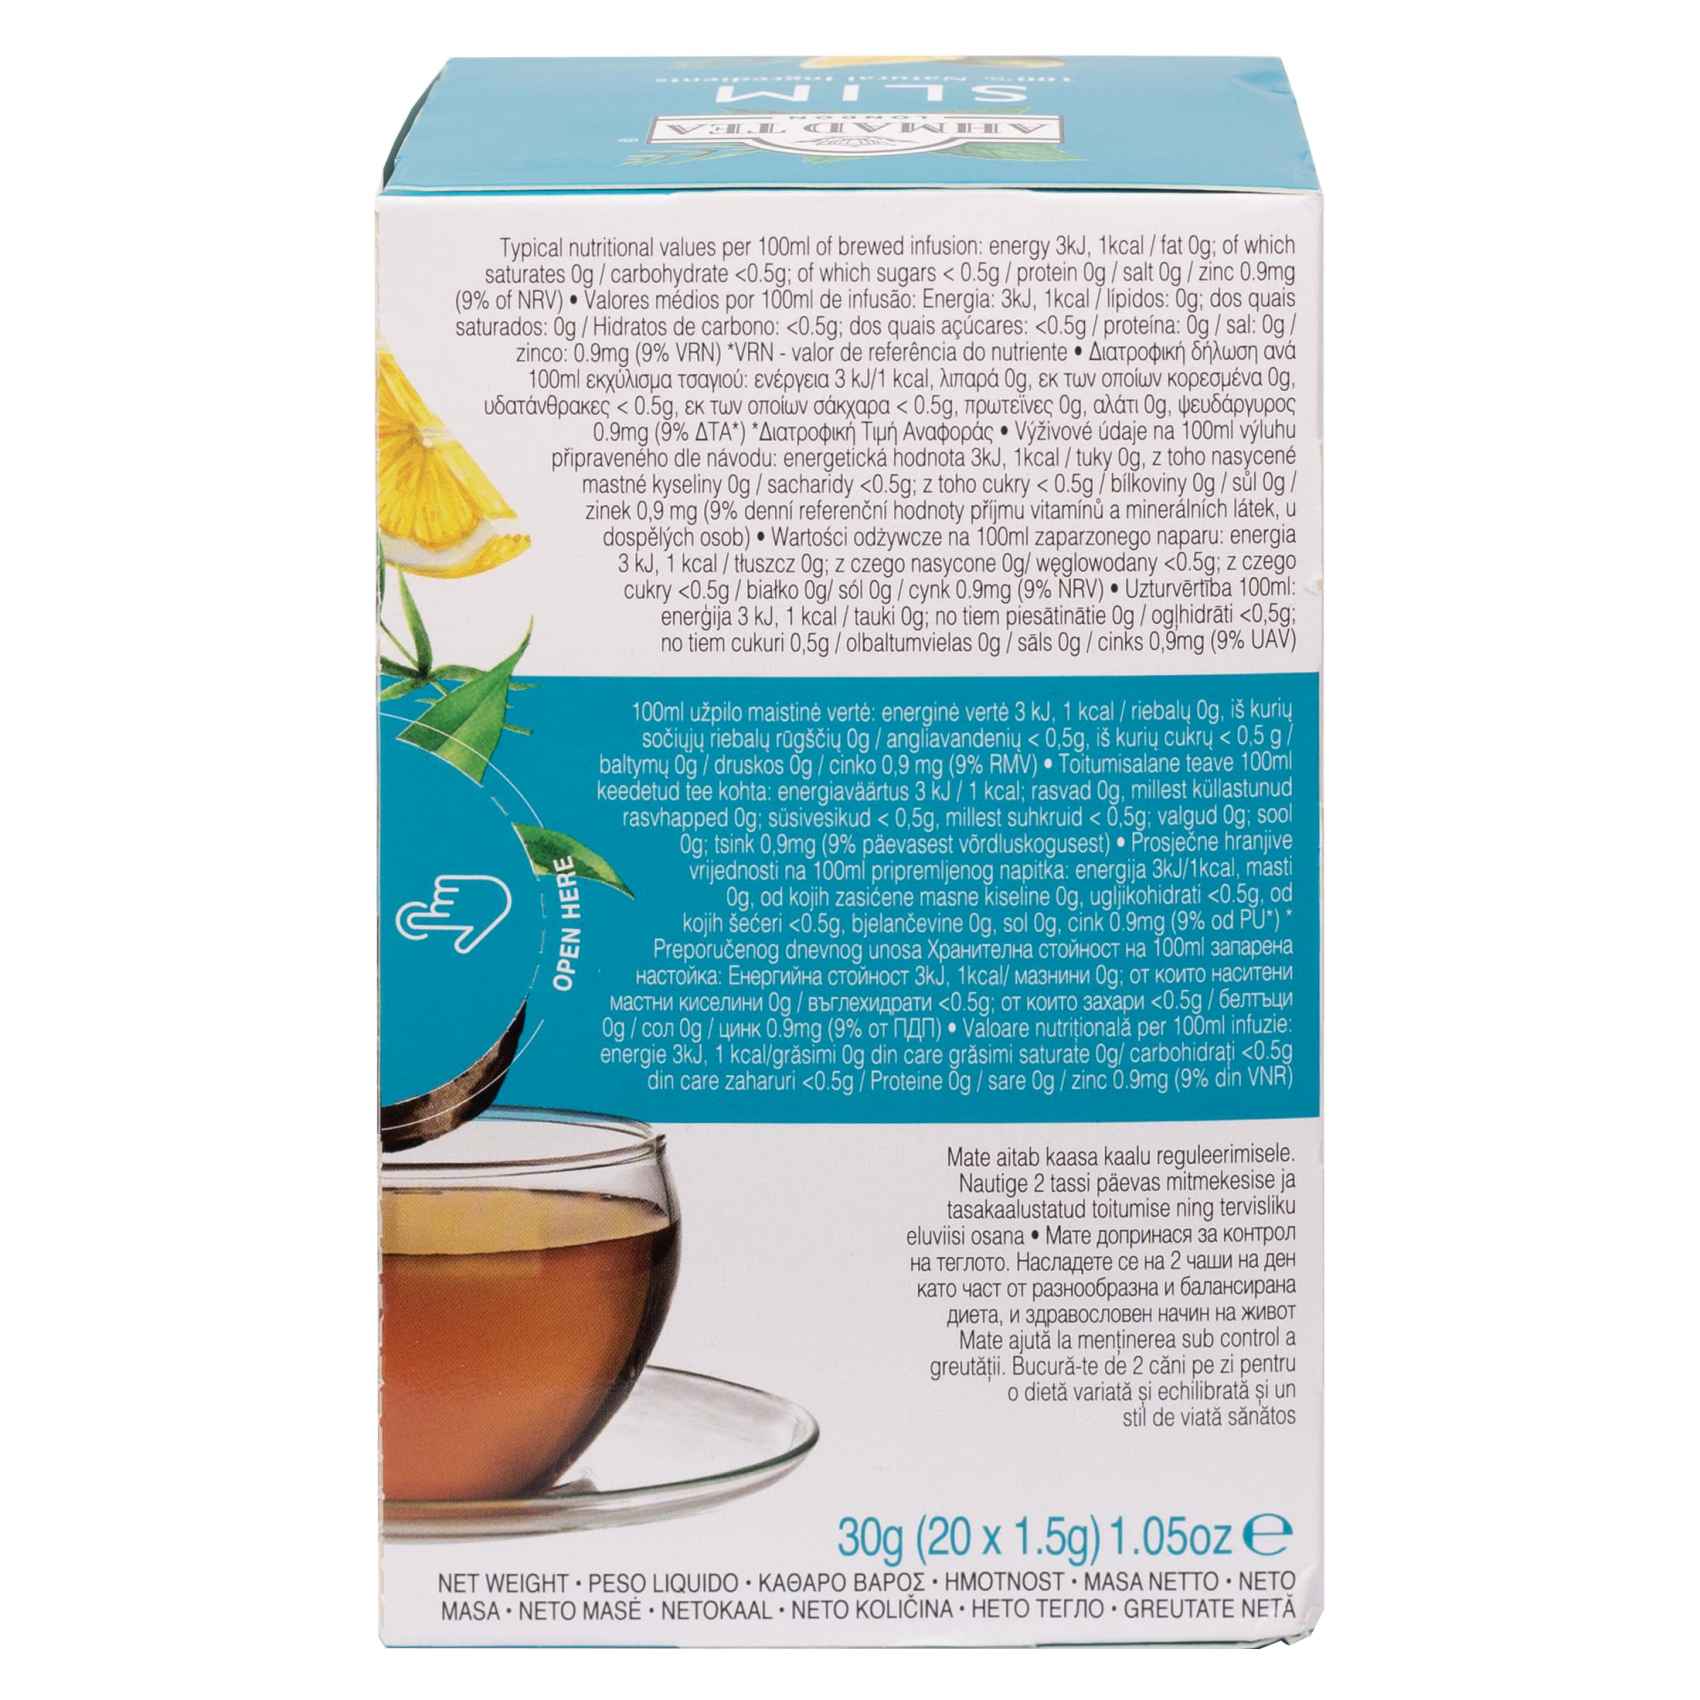 Ahmad Tea Slim Lemon Mate and Matcha Green Tea Plus Zinc 20 Tea Bags